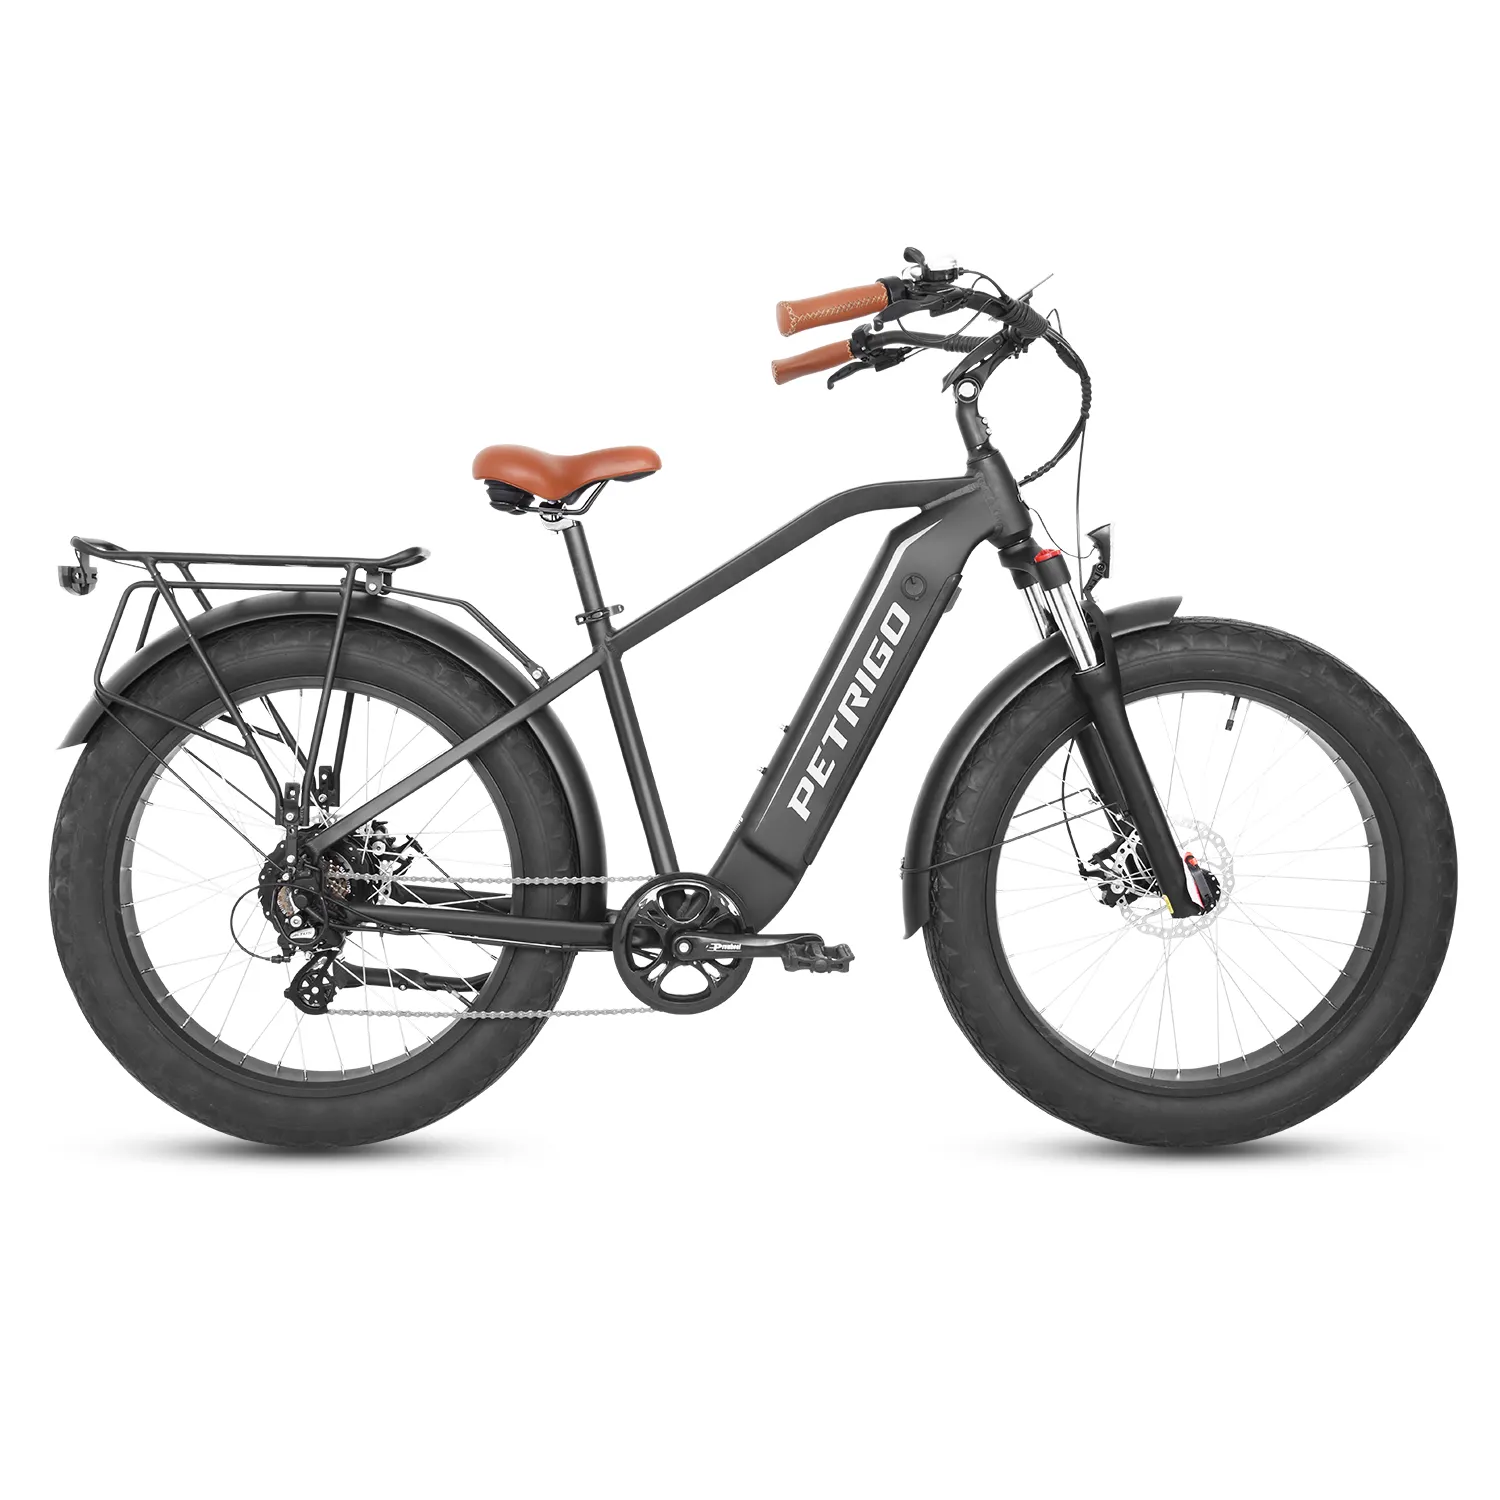 Petrigo 48v pneu elétrico de bicicleta, bicicleta para praia, cruiser, motor elétrico, assistente a todos os níveis, e-bicicleta, cruzeamento elétrico